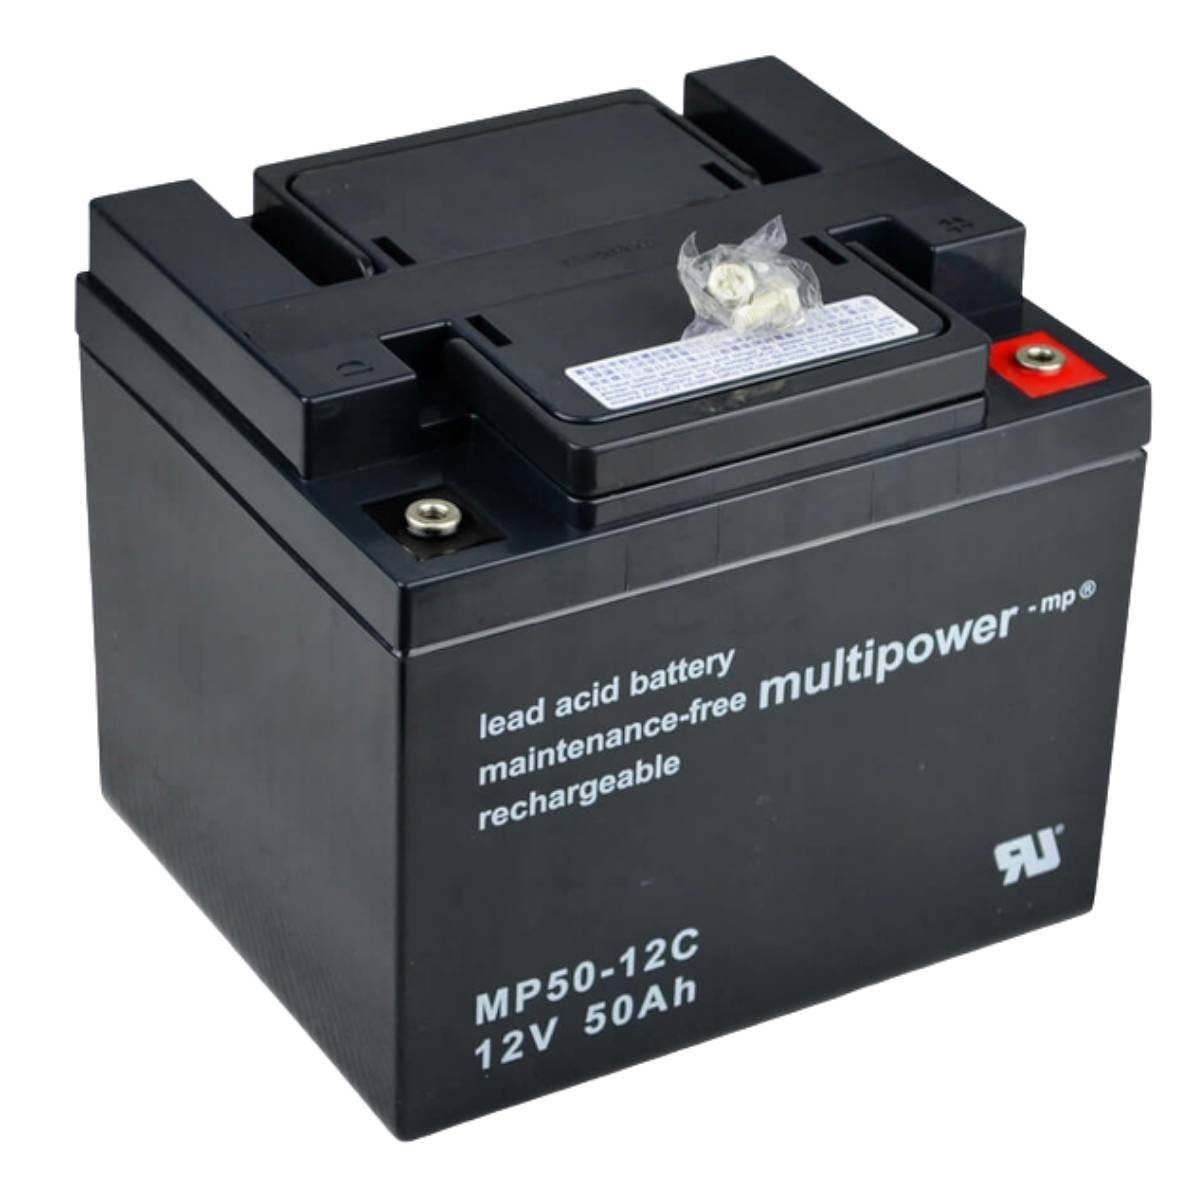 Multipower Multipower MP50-12C 12V 50Ah Rollstuhl Batterie Batterie, (12 V)